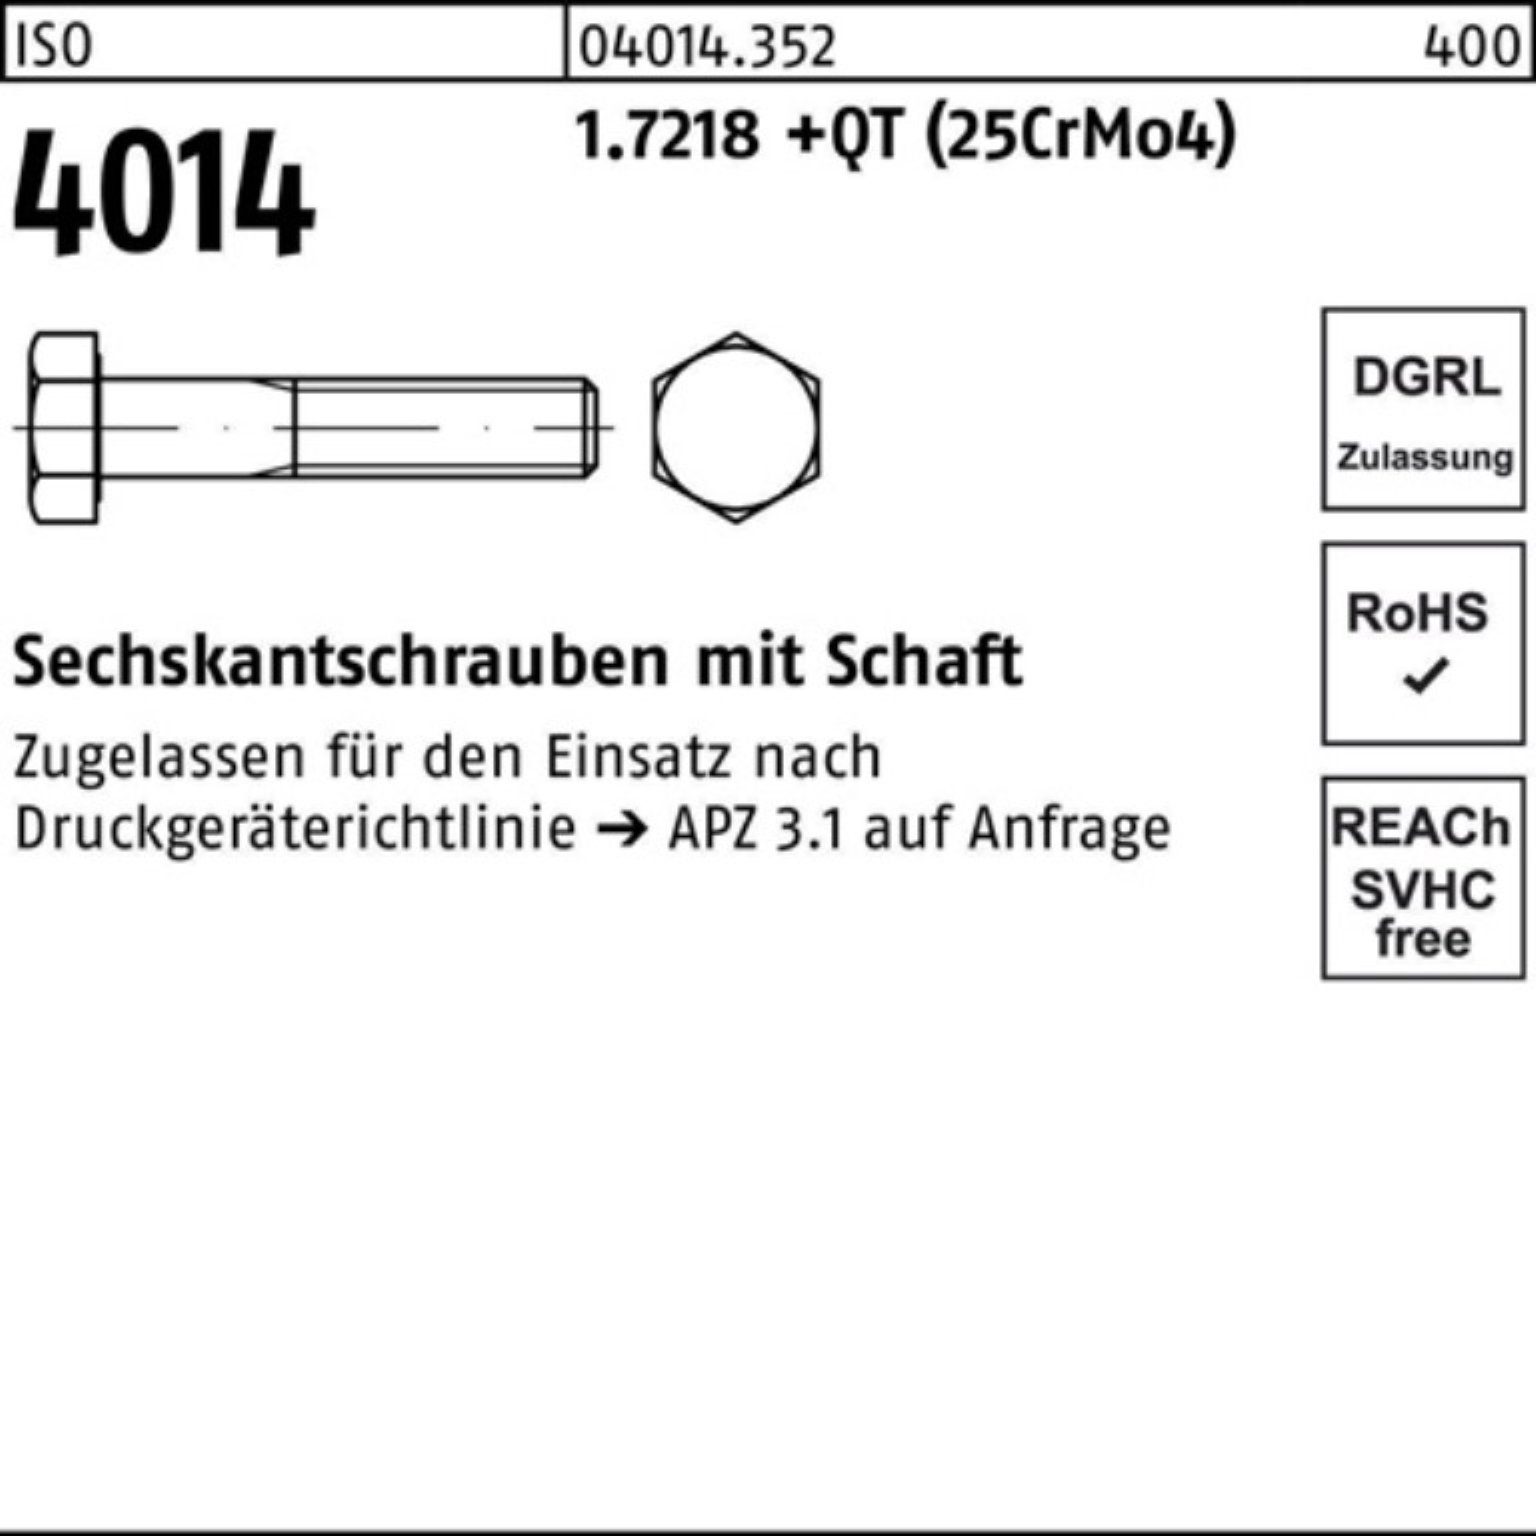 Pack 4014 +QT Sechskantschraube Bufab Schaft ISO M20x 100er Sechskantschraube 240 (25Cr 1.7218